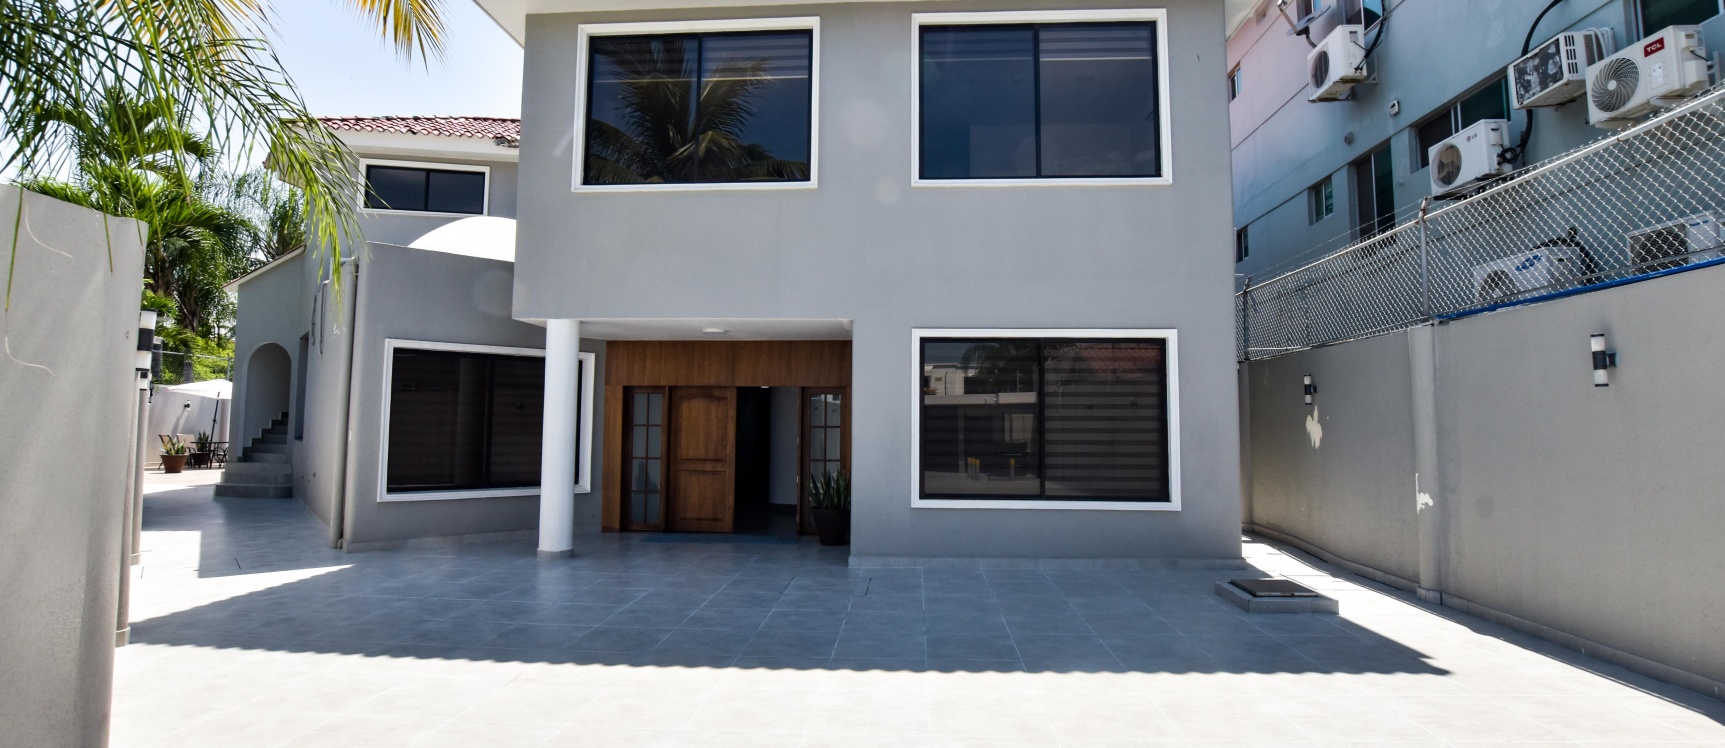 GeoBienes - Suite amoblada en alquiler en Calle la Moderna, Samborondón - Plusvalia Guayaquil Casas de venta y alquiler Inmobiliaria Ecuador